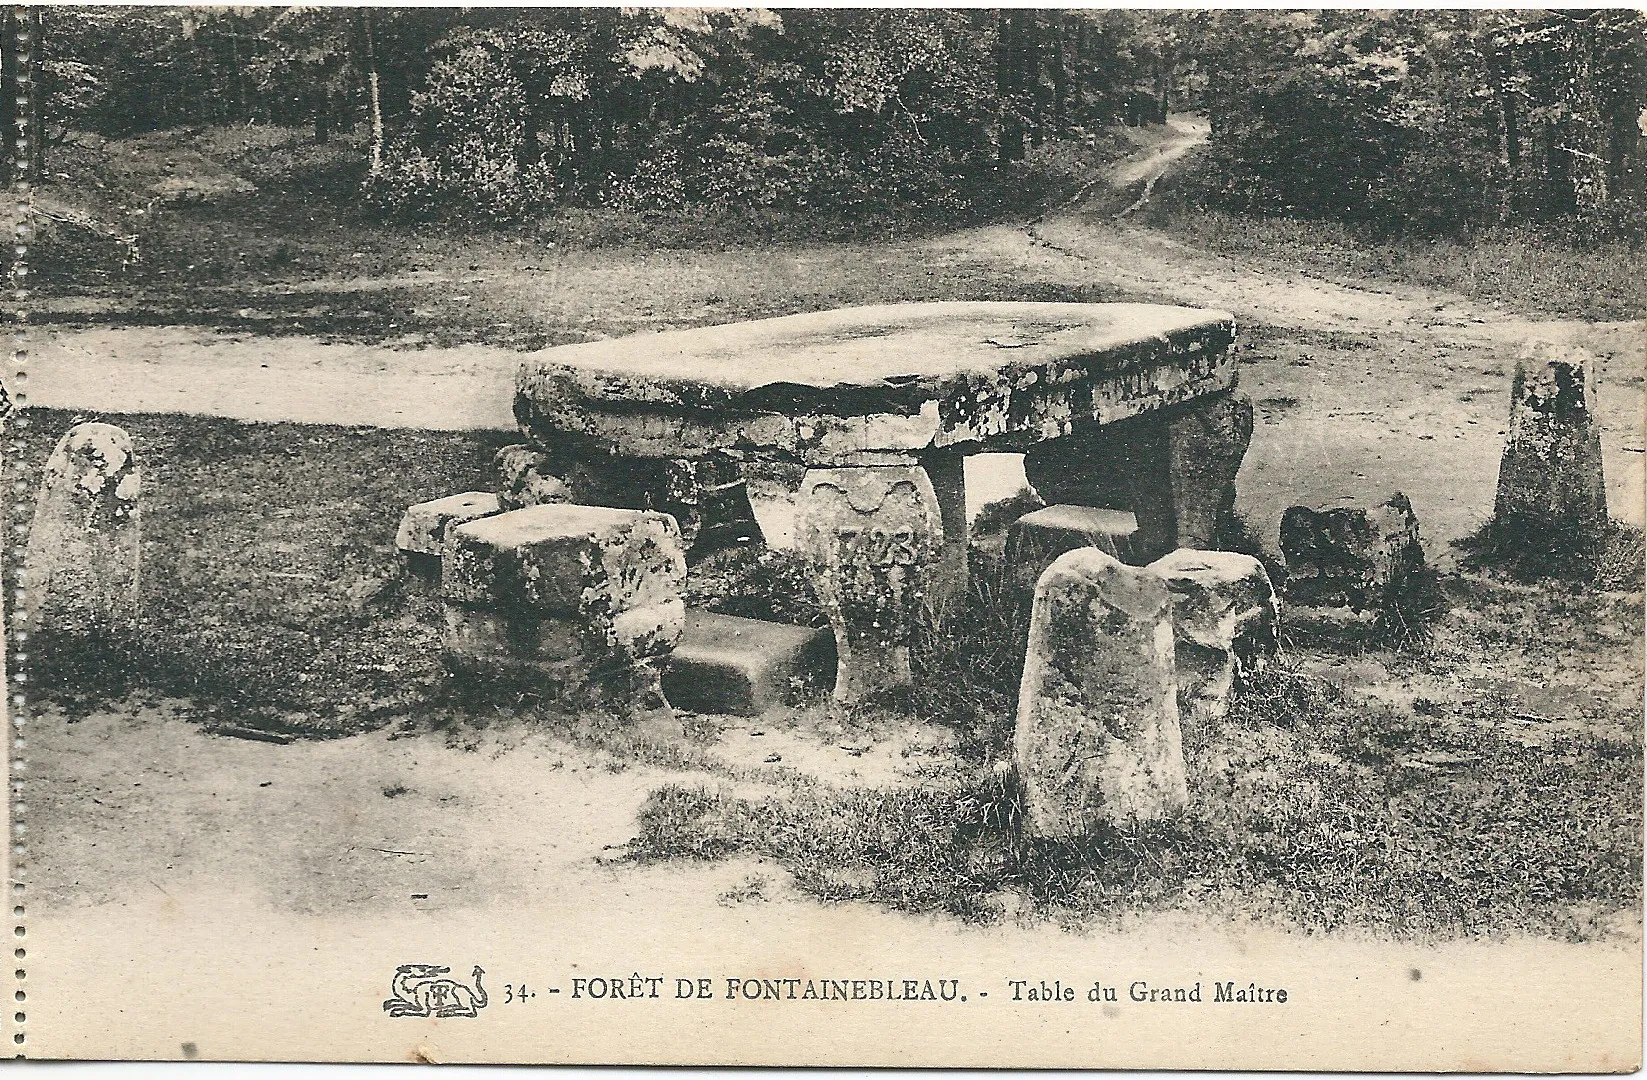 Photo showing: Carte postale de Fontainebleau, son château & sa forêt, datant de 1912 environ (avant 1914 certainement)